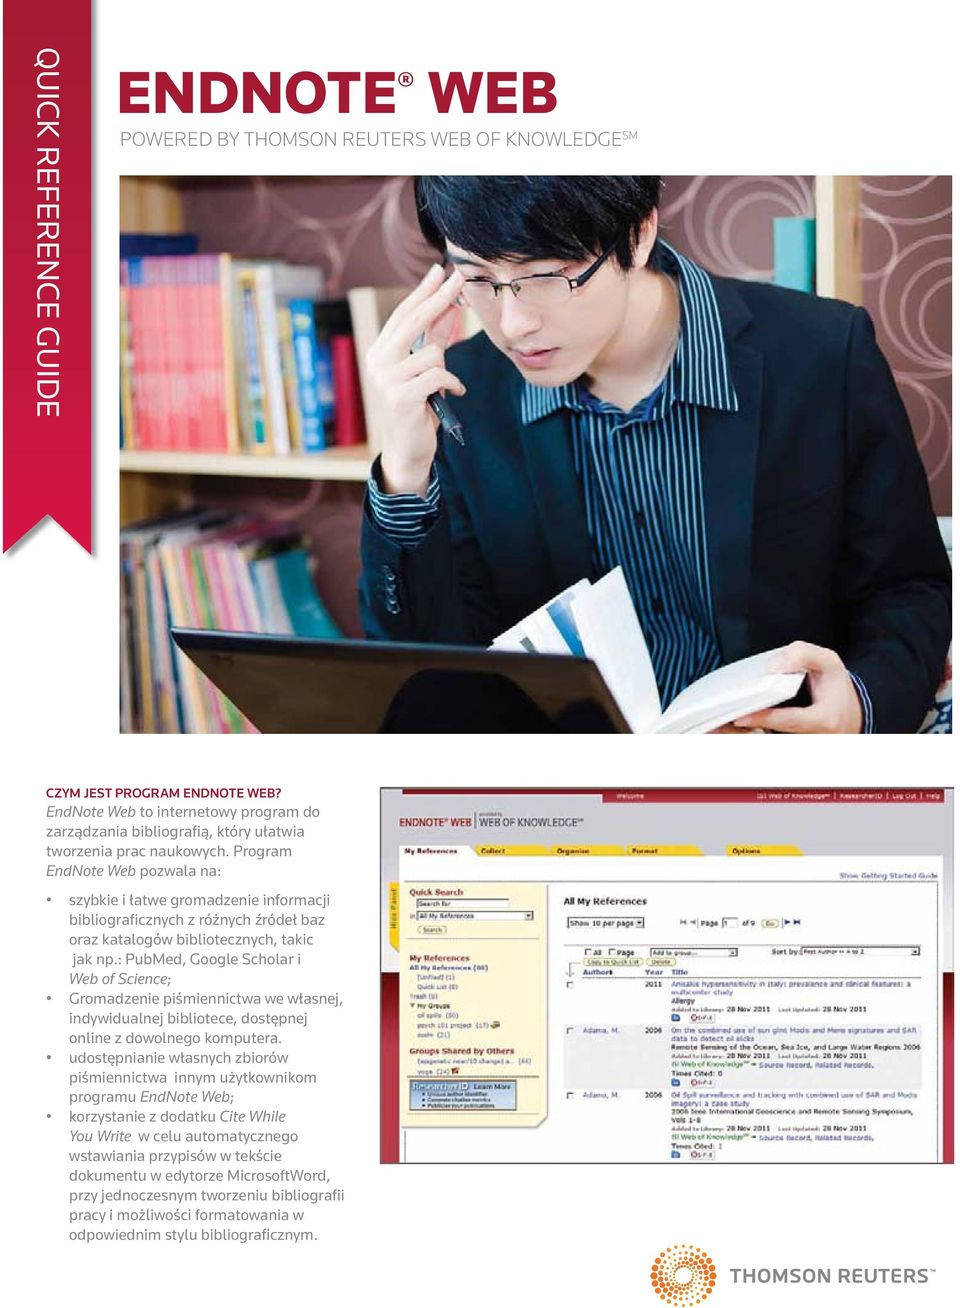 Program EndNote Web pozwala na: szybkie i łatwe gromadzenie informacji bibliograficznych z różnych źródeł baz oraz katalogów bibliotecznych, takic jak np.